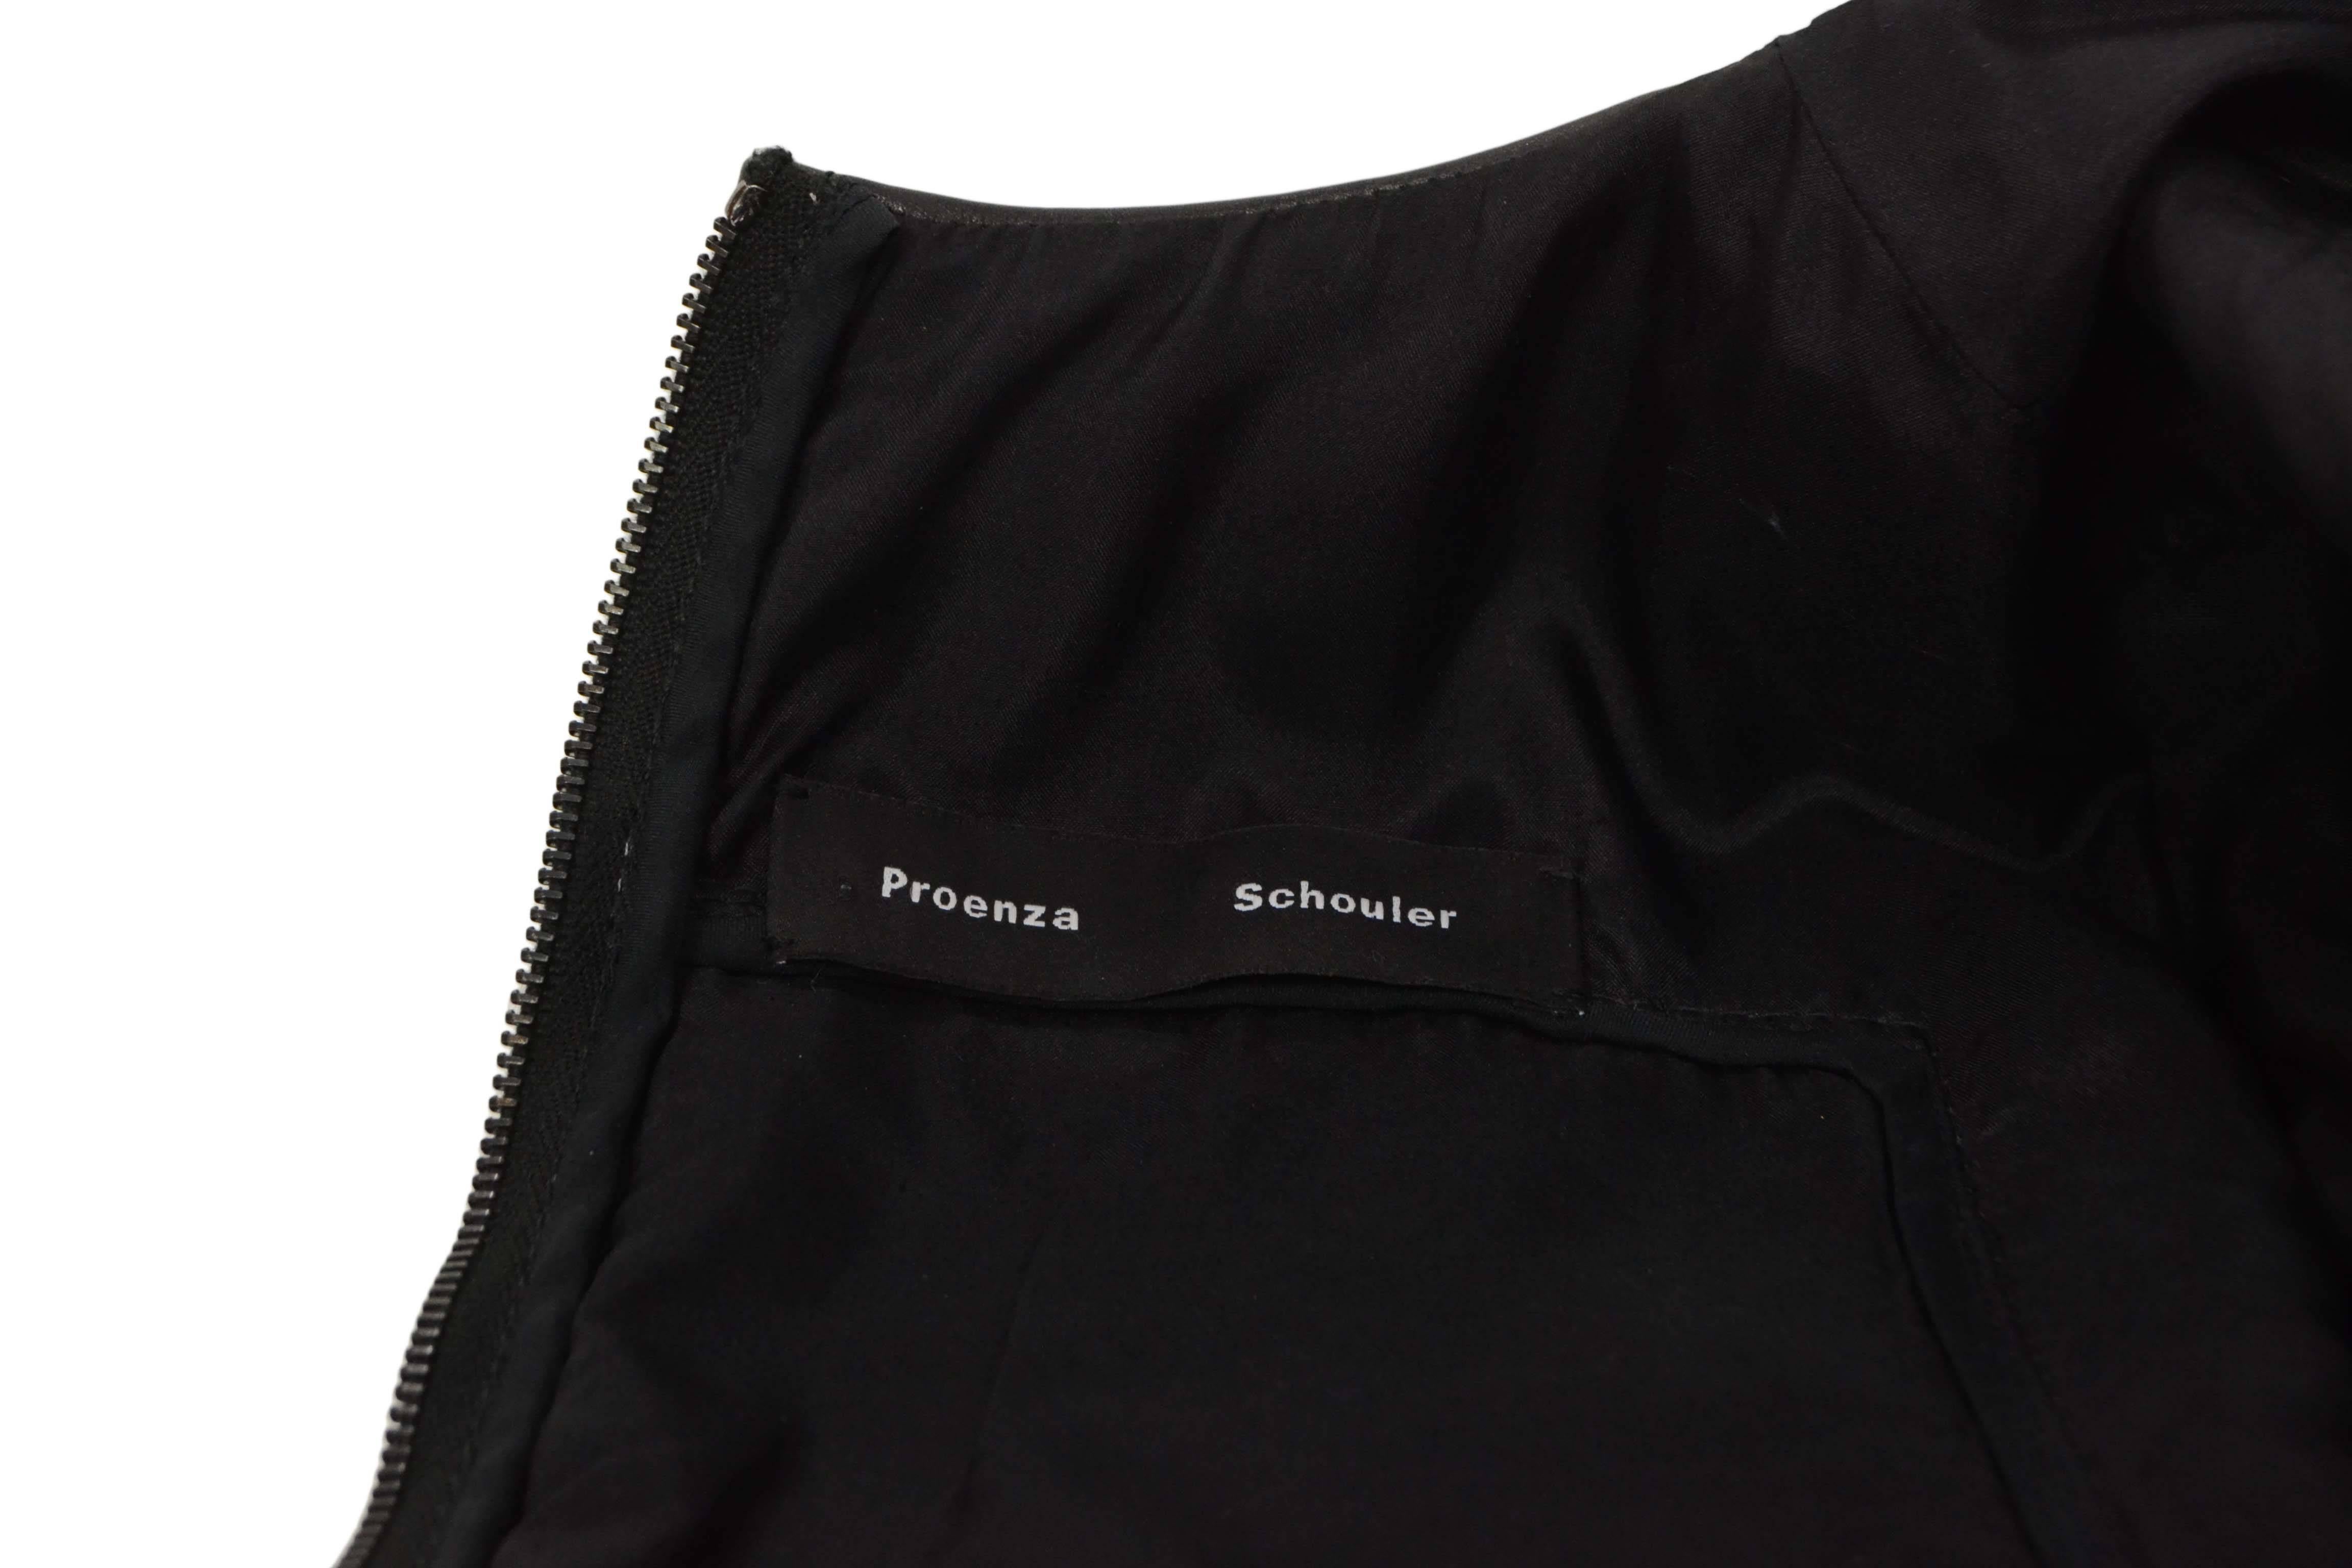 Women's Proenza Schouler Black Leather & Tweed Short Sleeve Top sz S